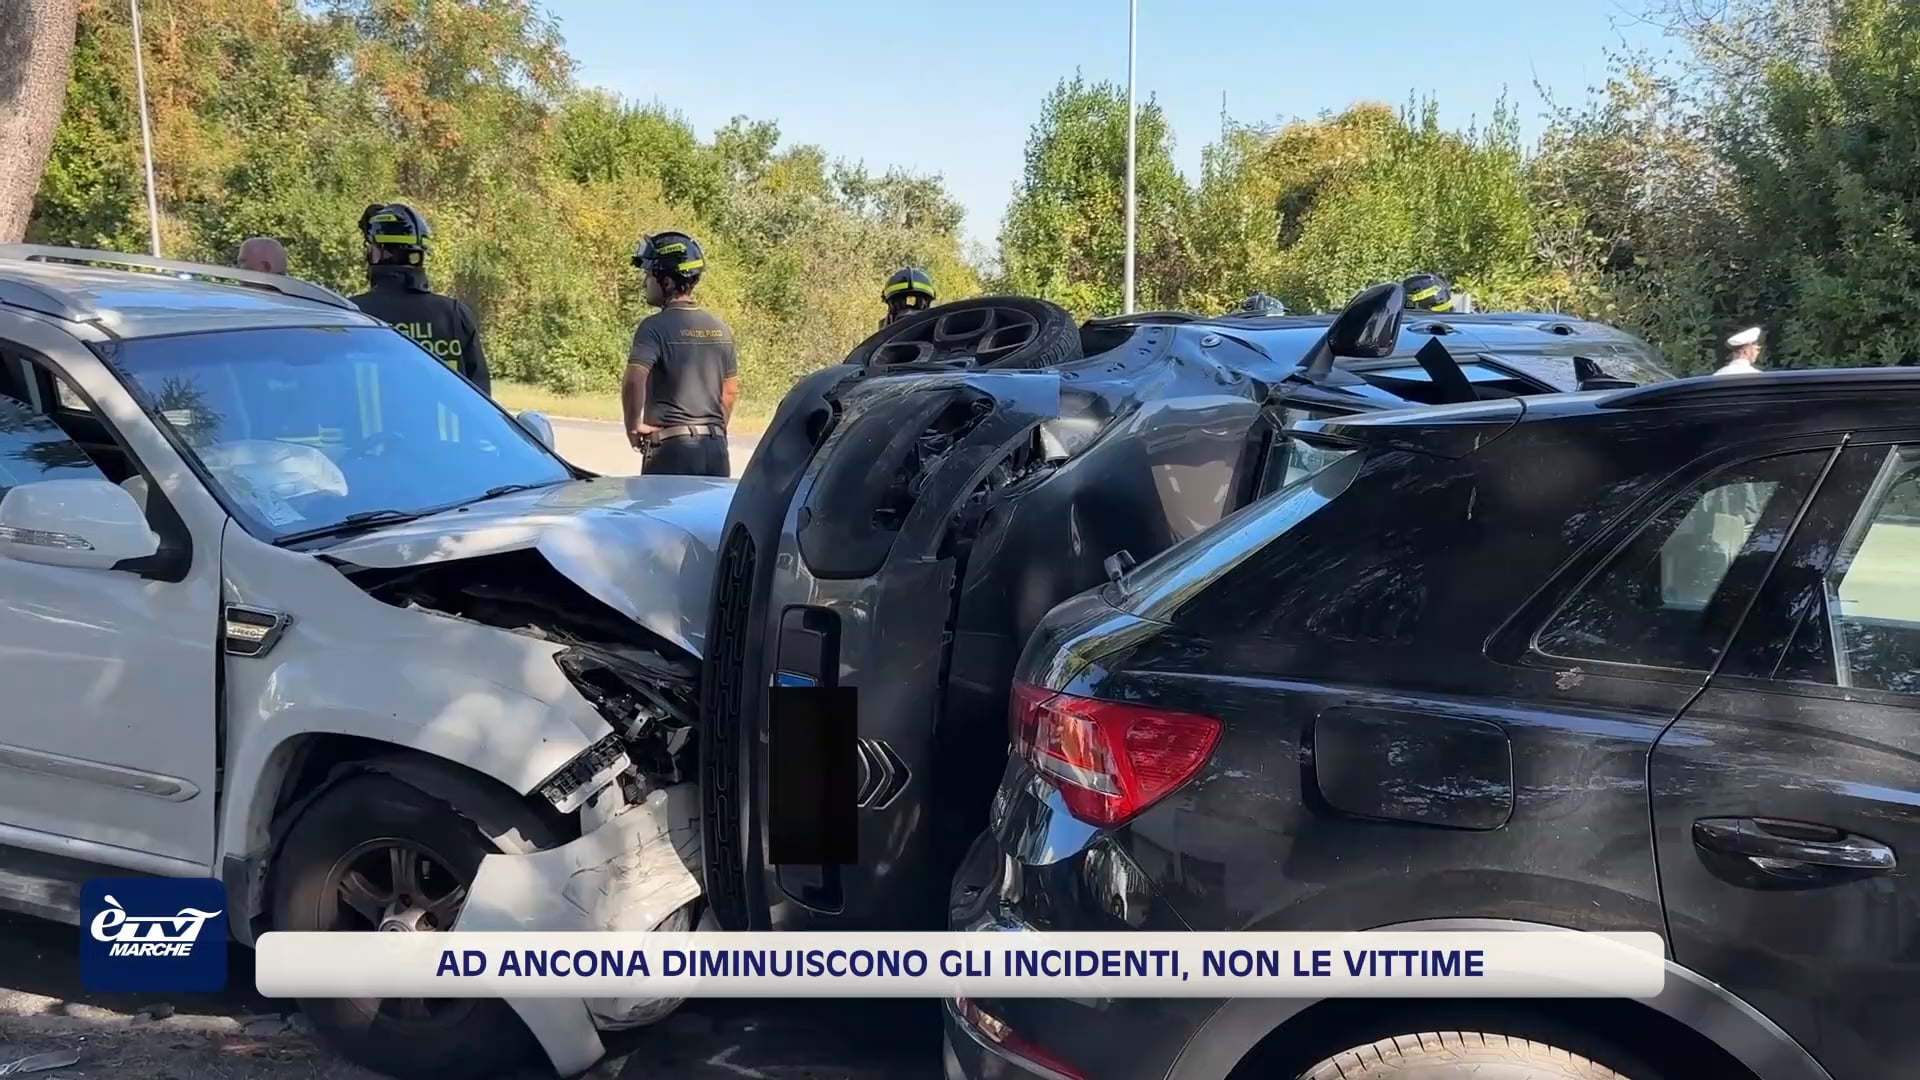 Ad Ancona diminuiscono gli incidenti, non le vittime - VIDEO